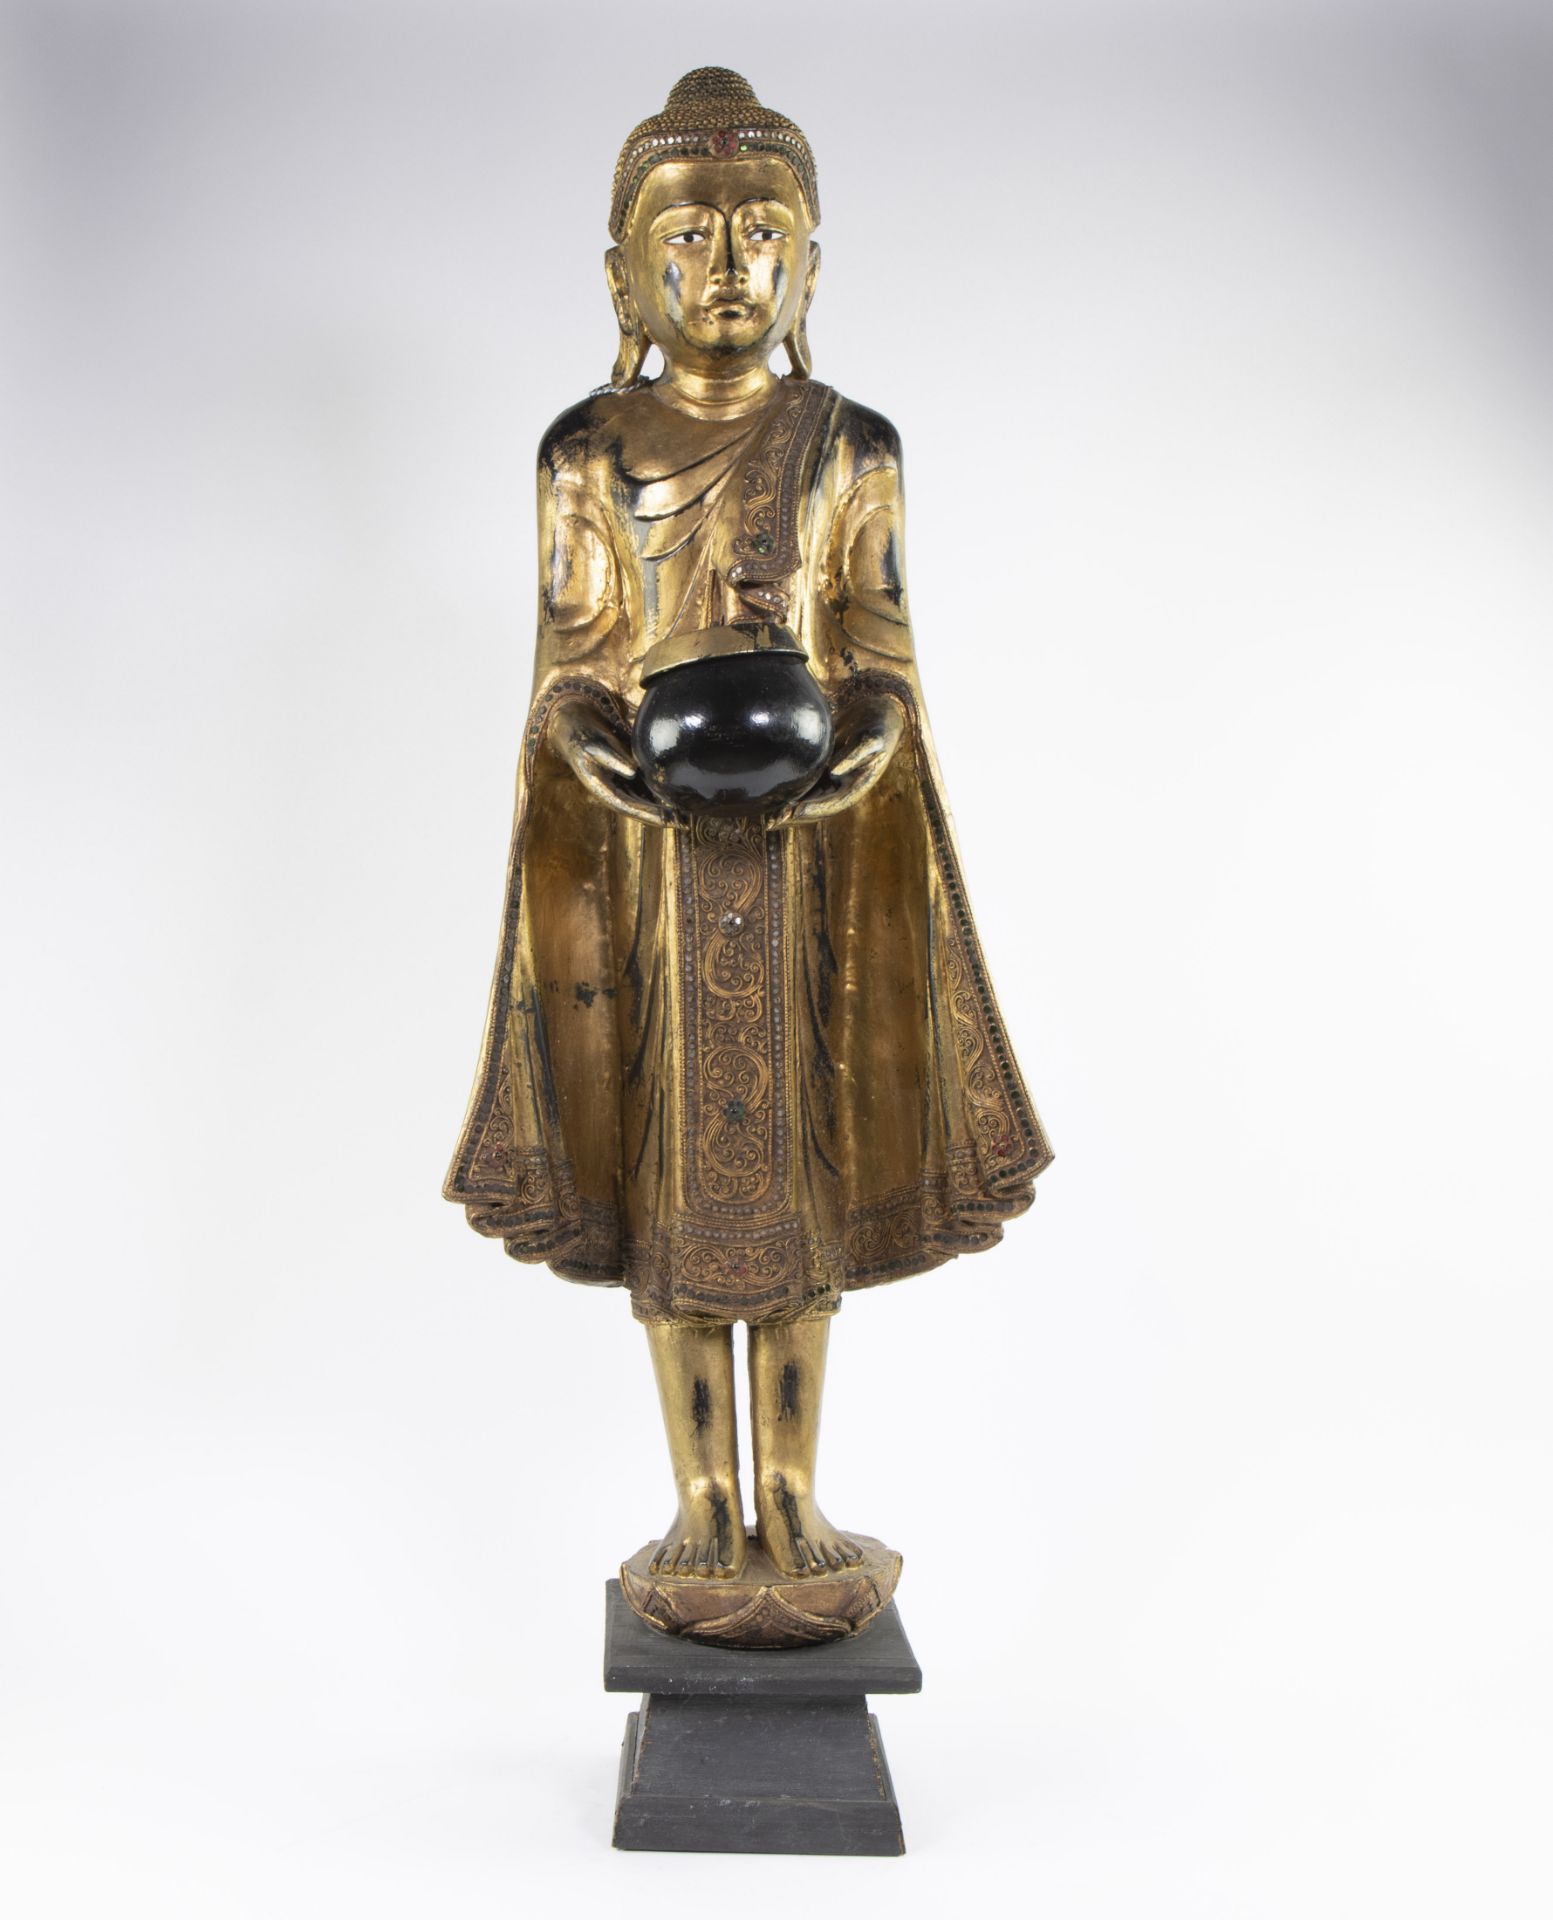 Large gilded wooden Buddha